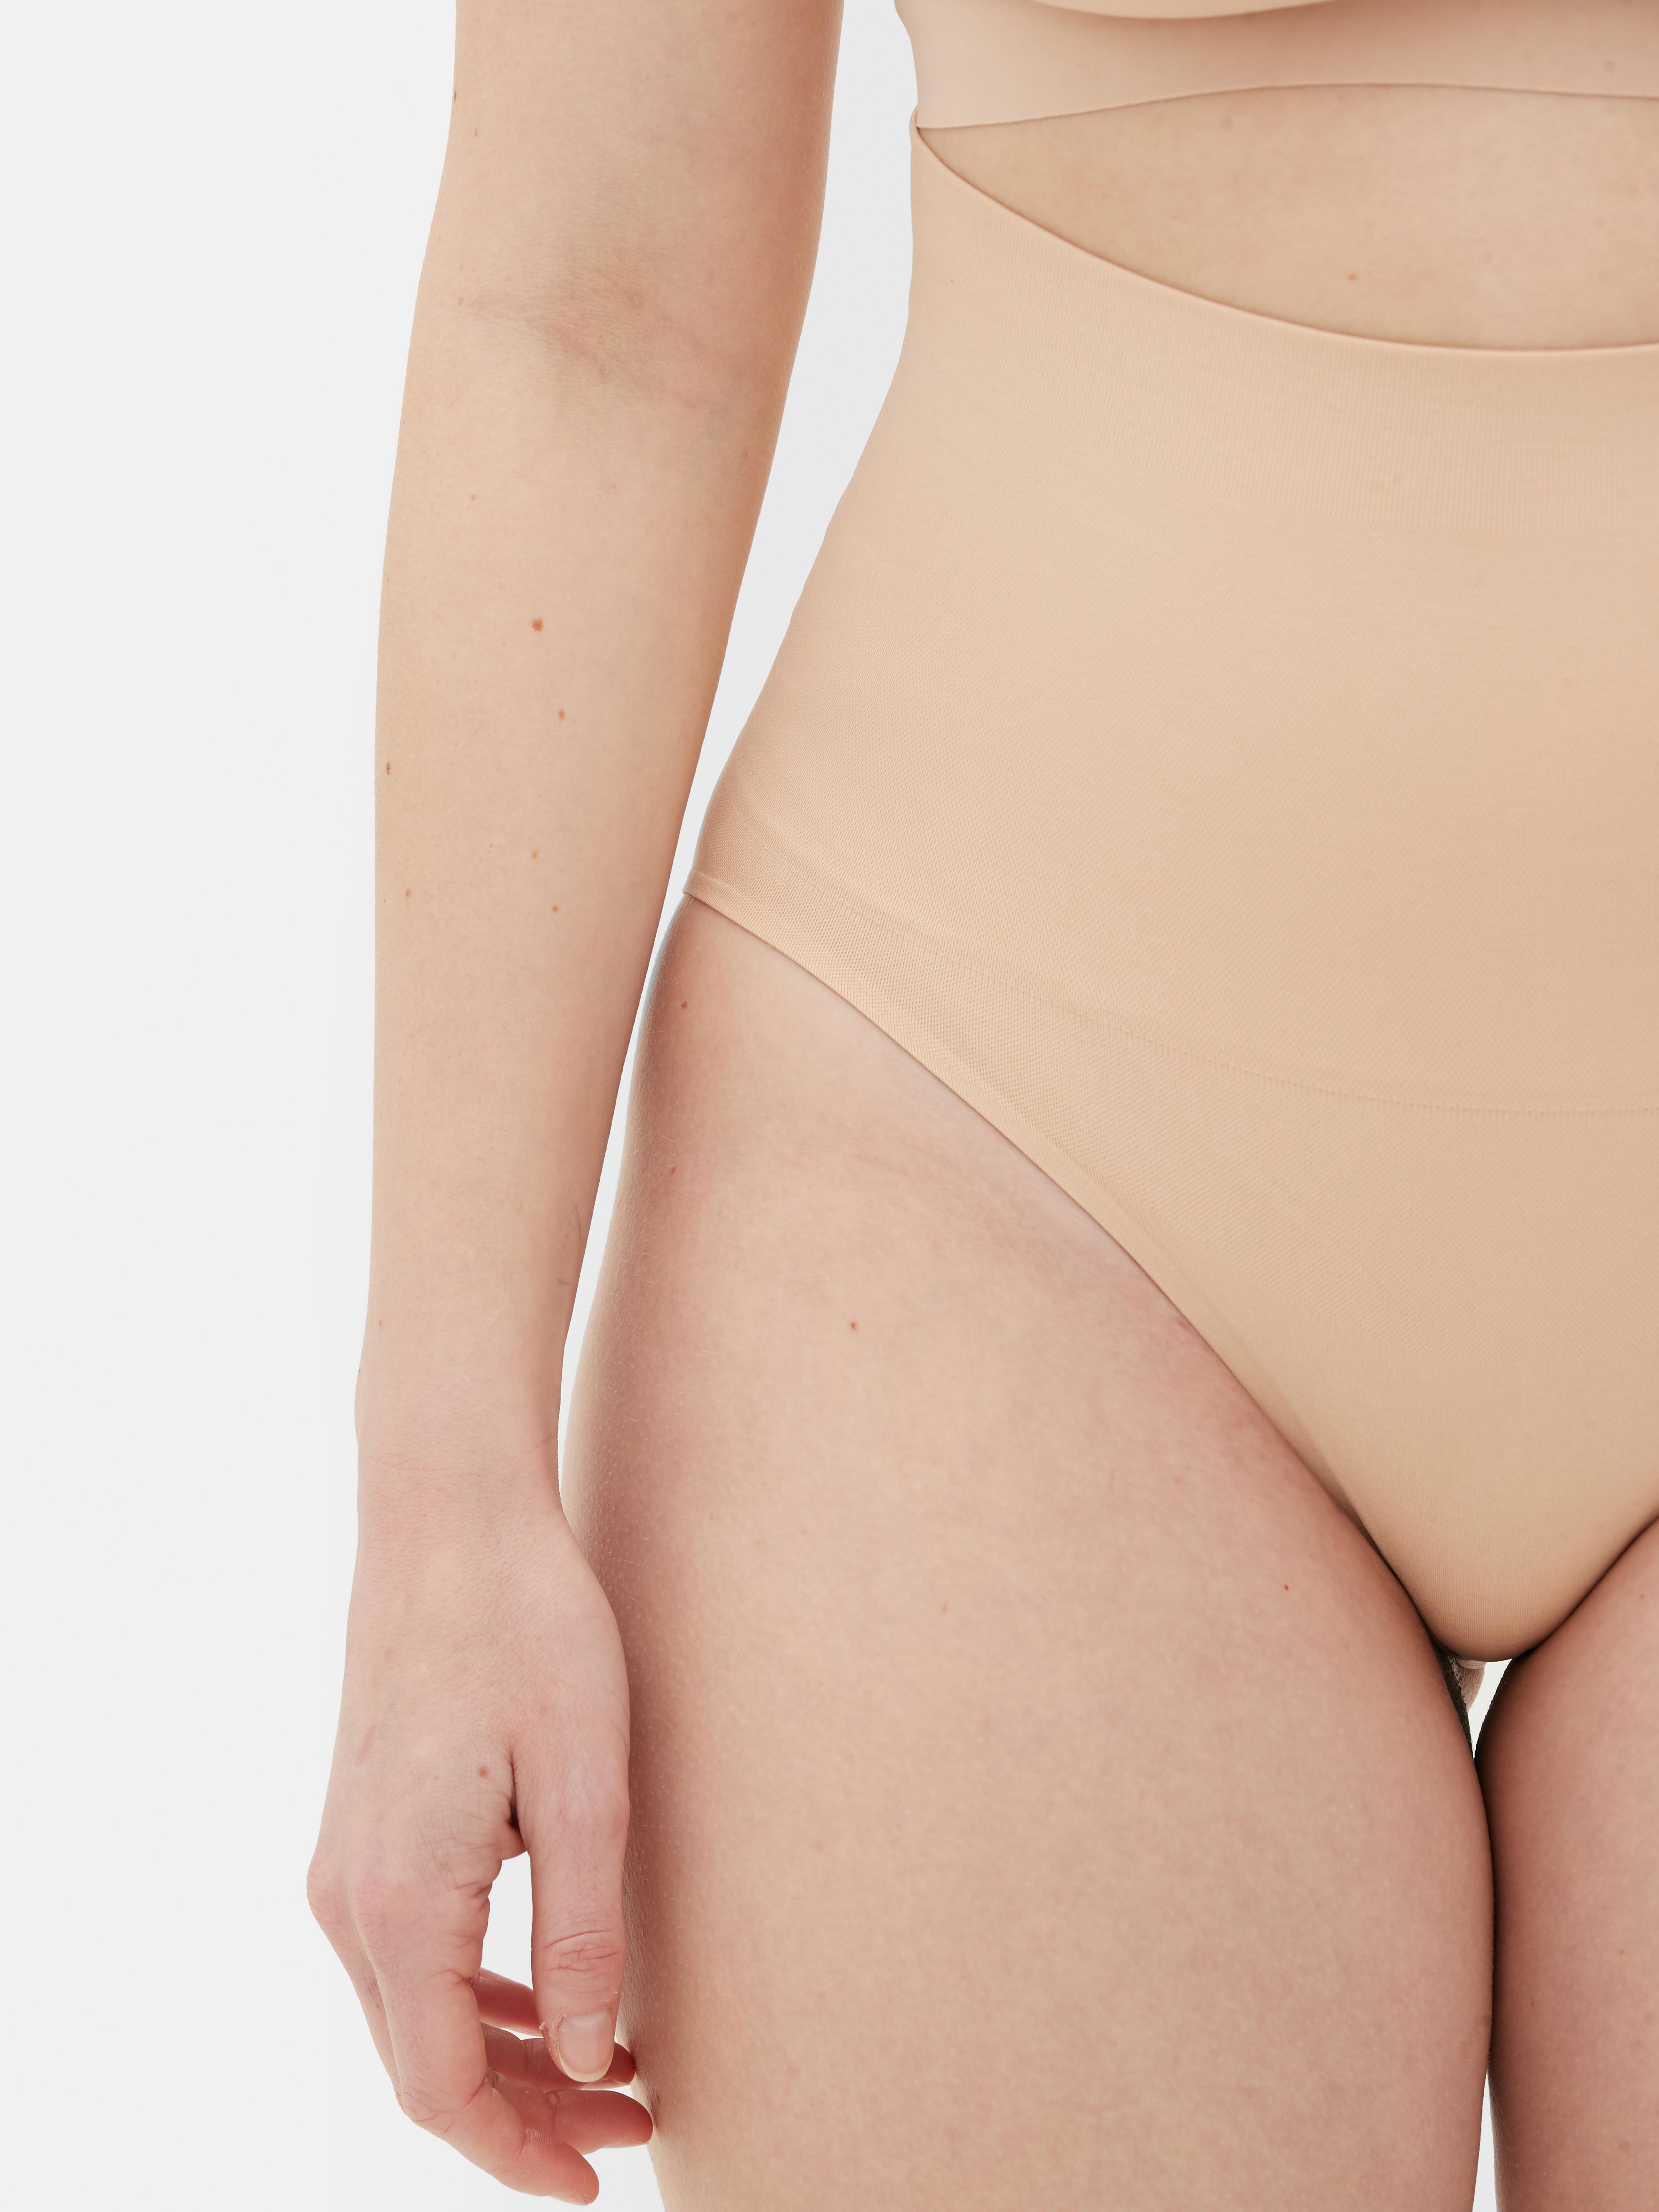 Zldhxyf Primark Online Shop Women's Seamless Beauty Back Underwear